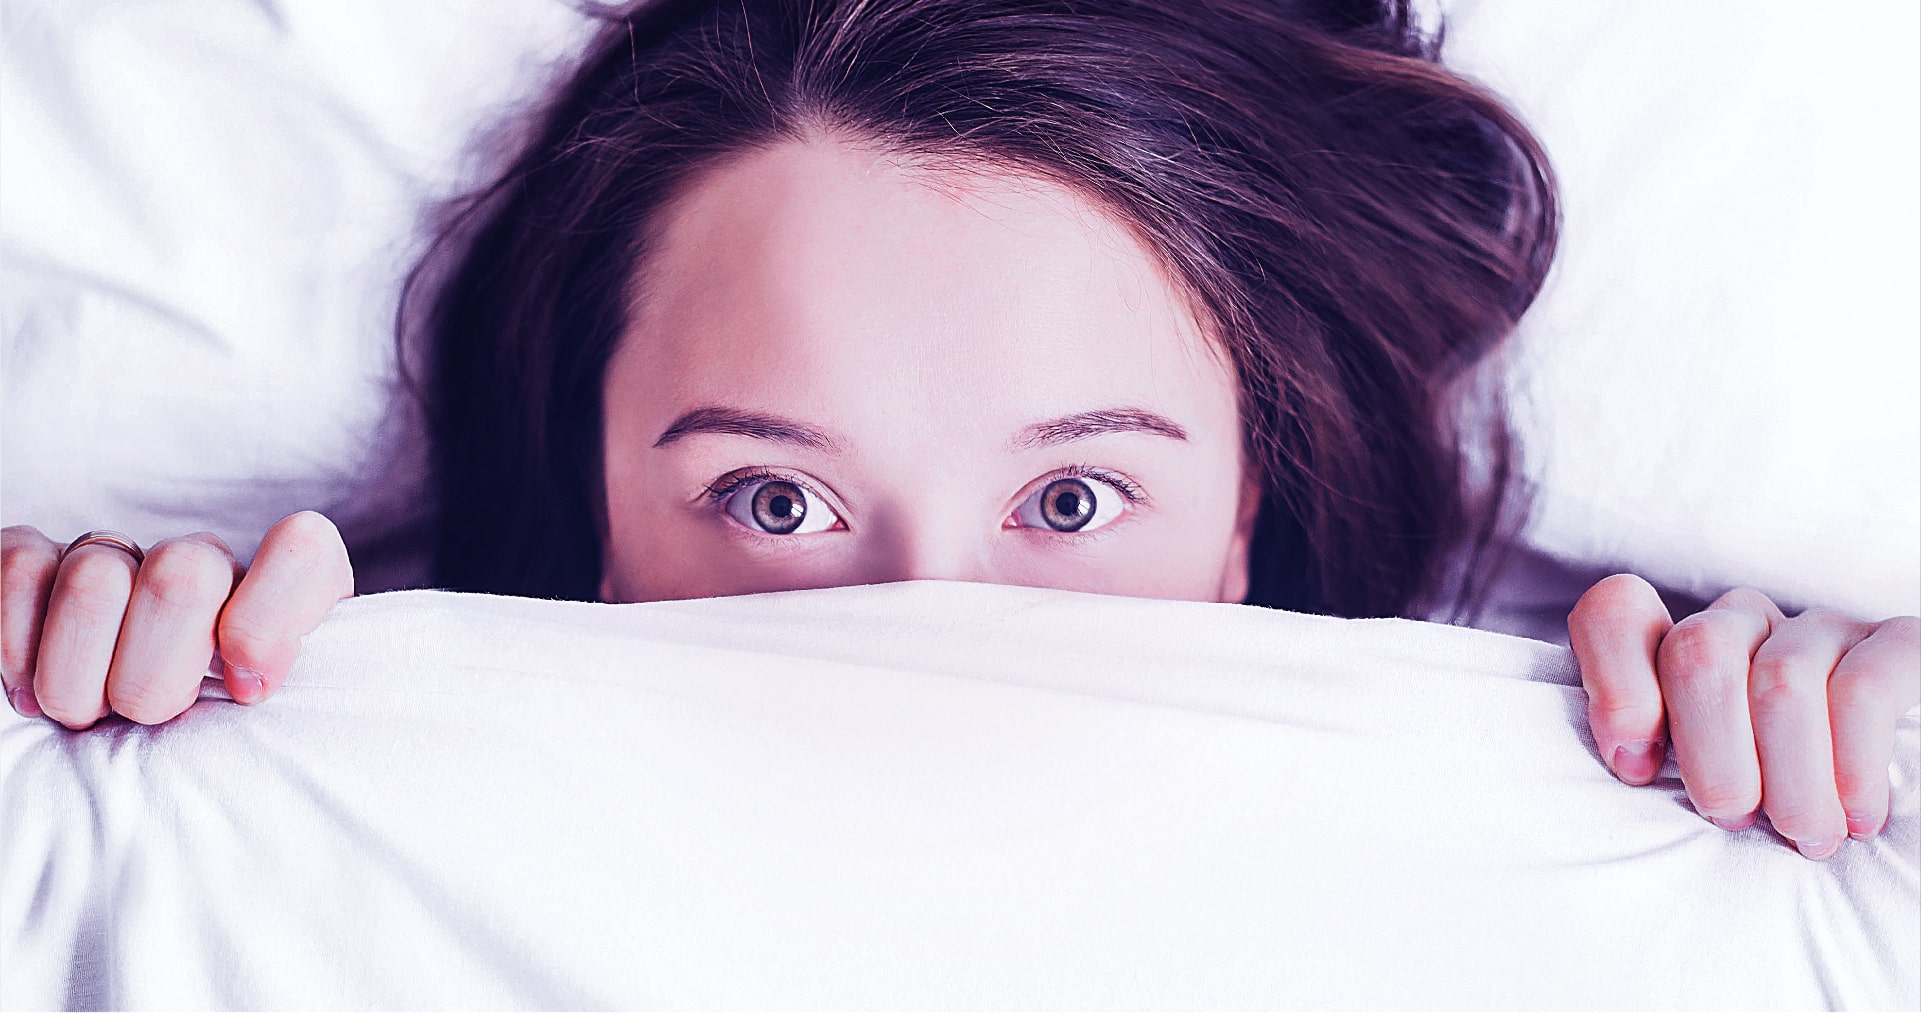 Αϋπνία: Αντιμετώπιση με 5 σύγχρονες λύσεις